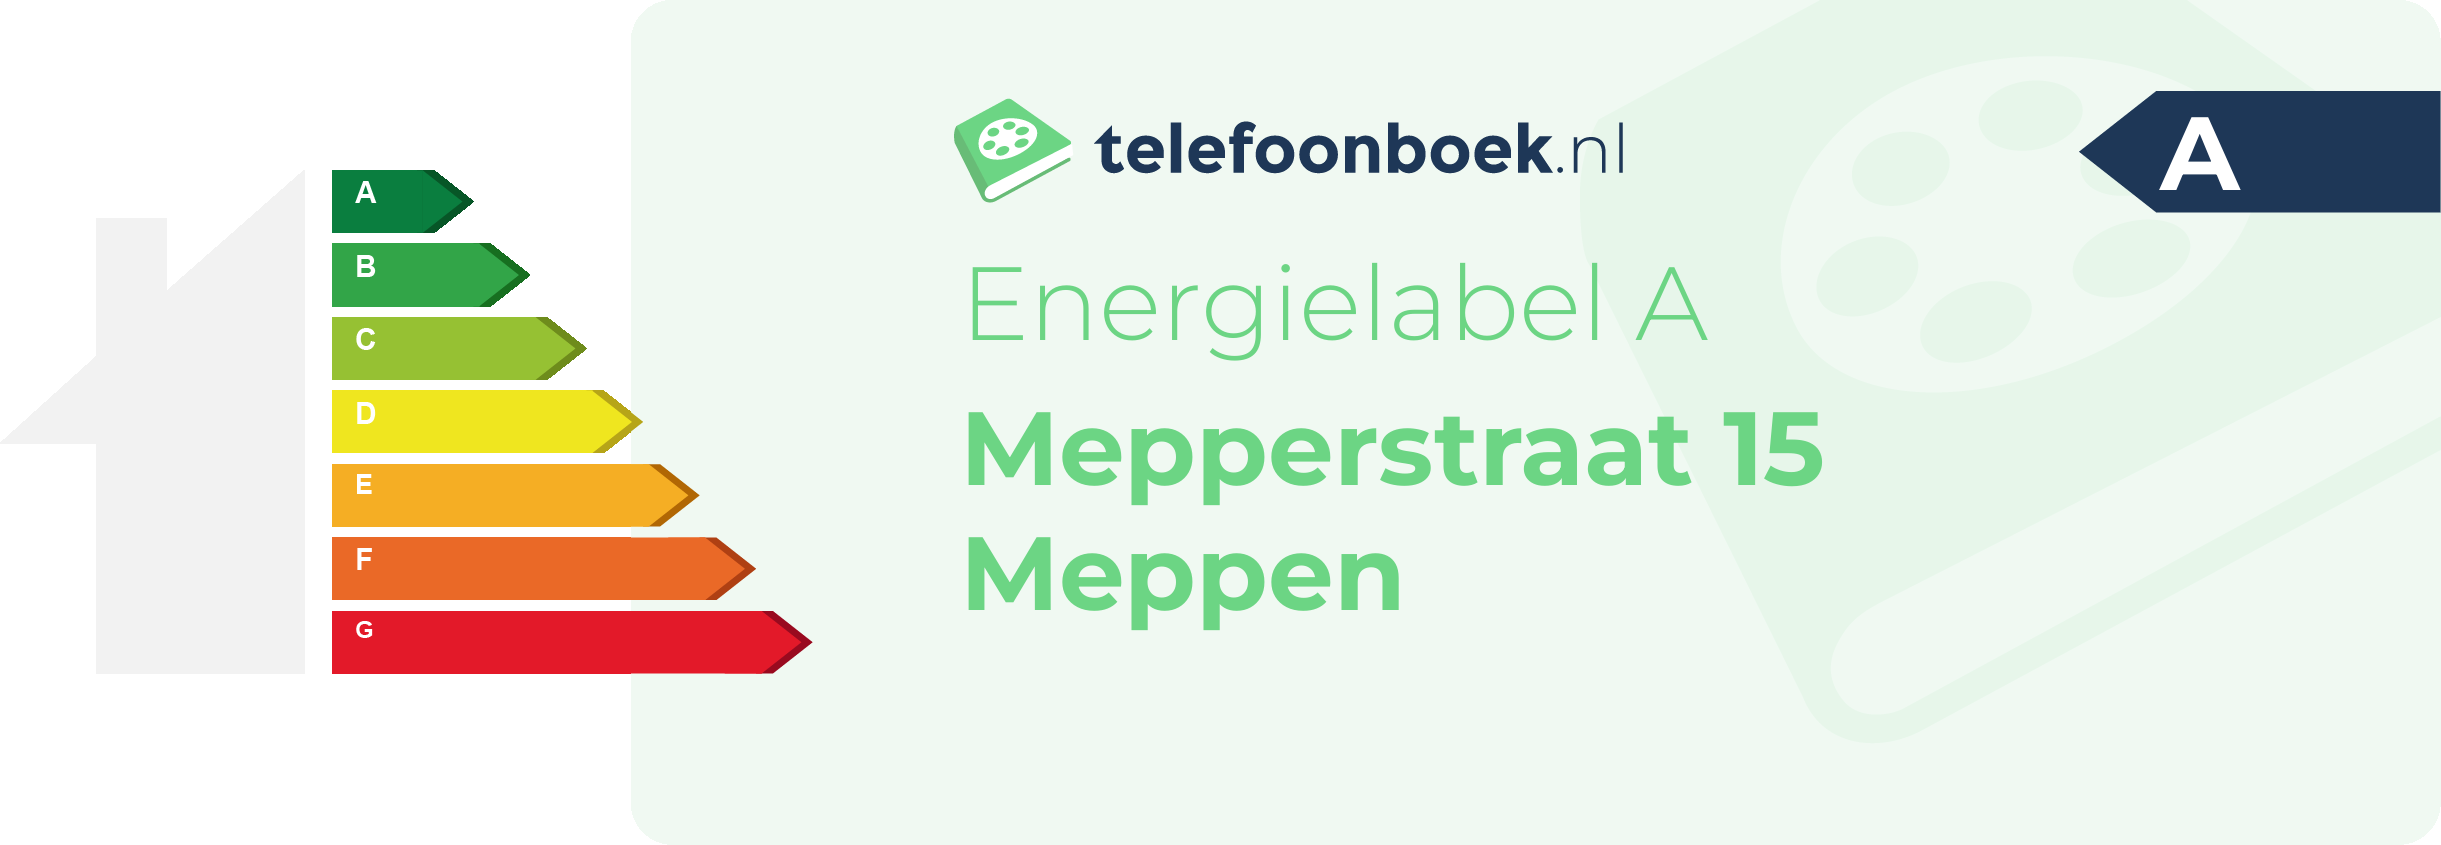 Energielabel Mepperstraat 15 Meppen